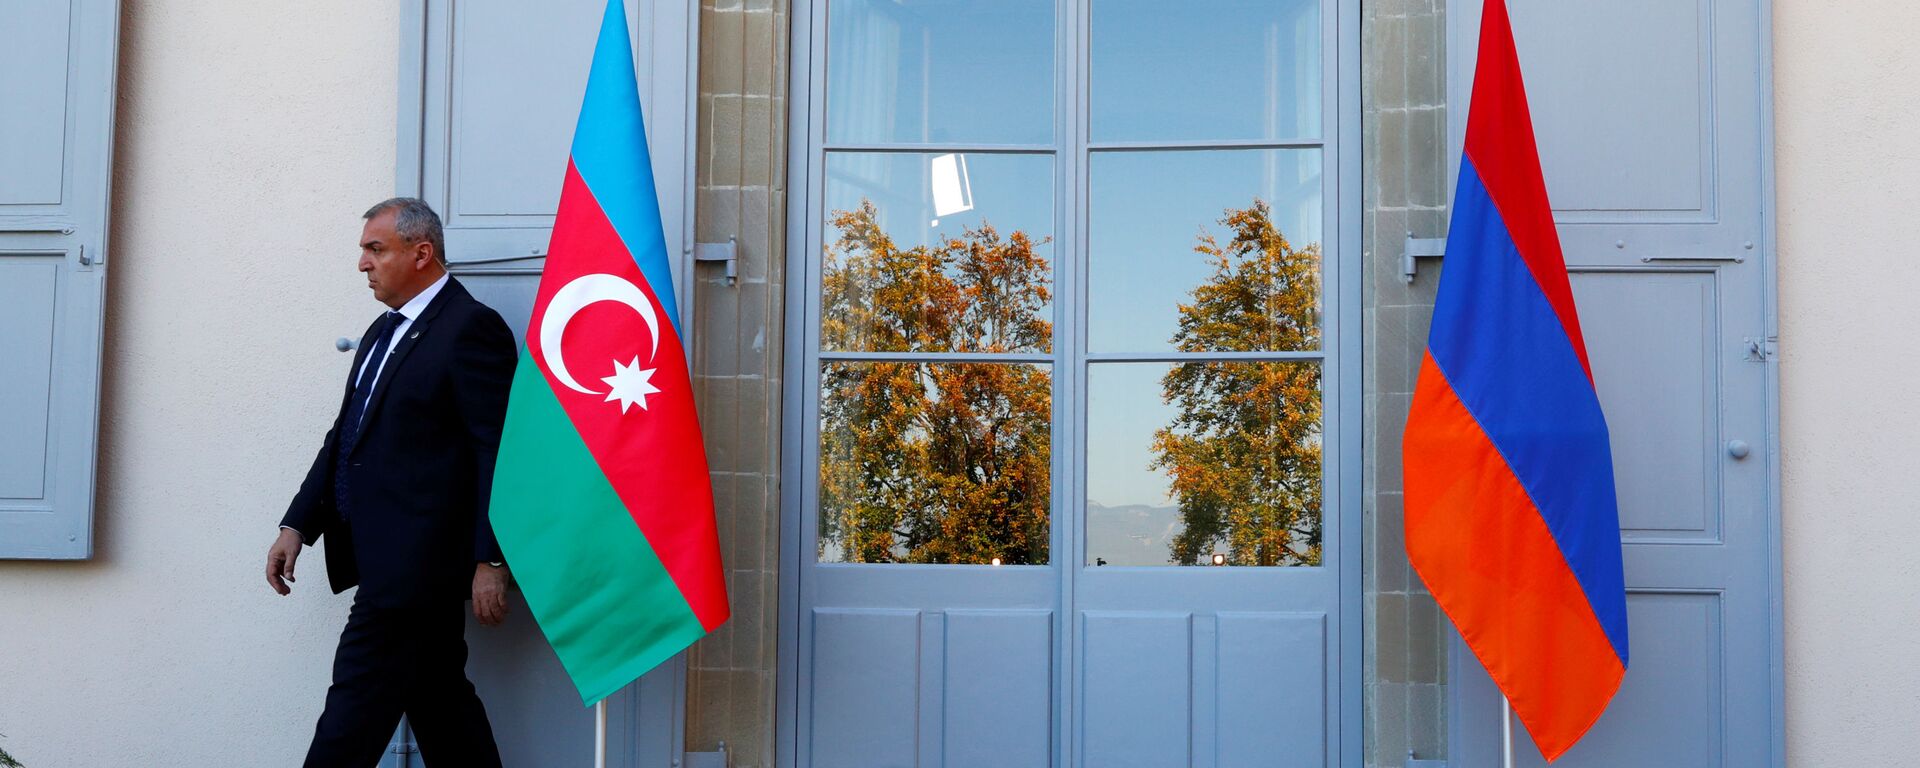 Banderas de Armenia y Azerbaiyán  - Sputnik Mundo, 1920, 23.07.2020